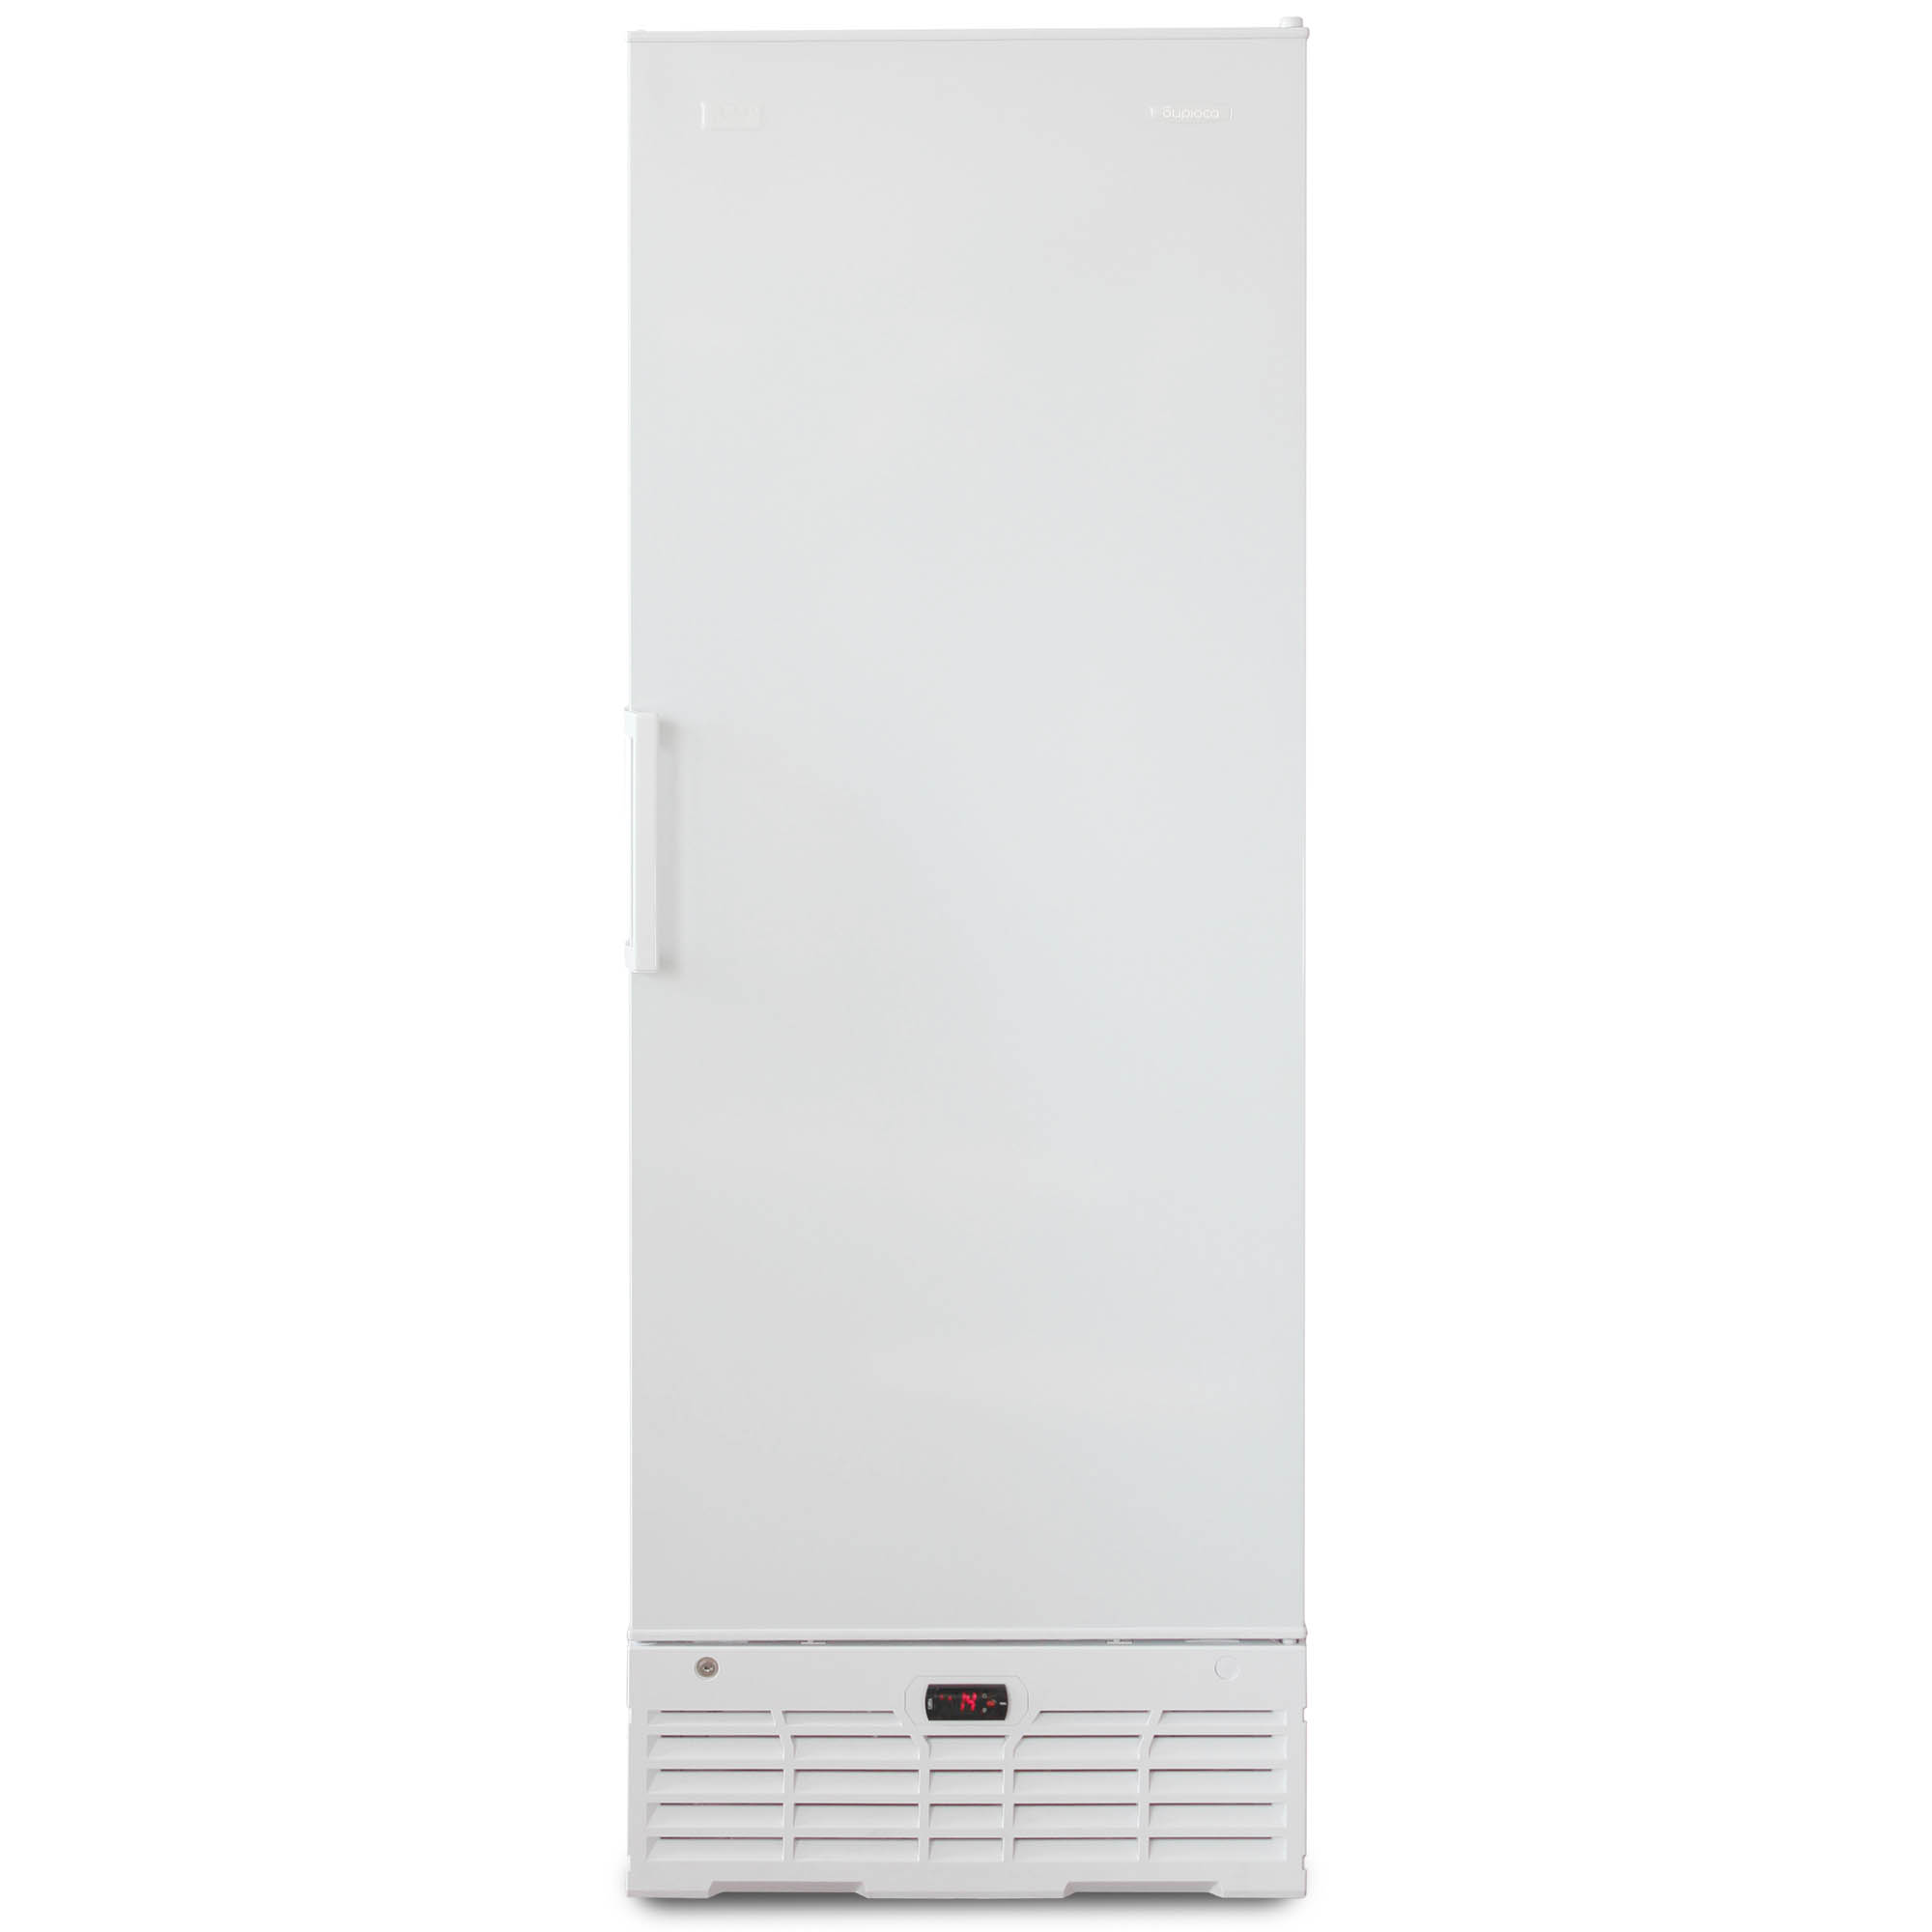 Фармацевтический холодильник Бирюса 450K-R (6R) фото